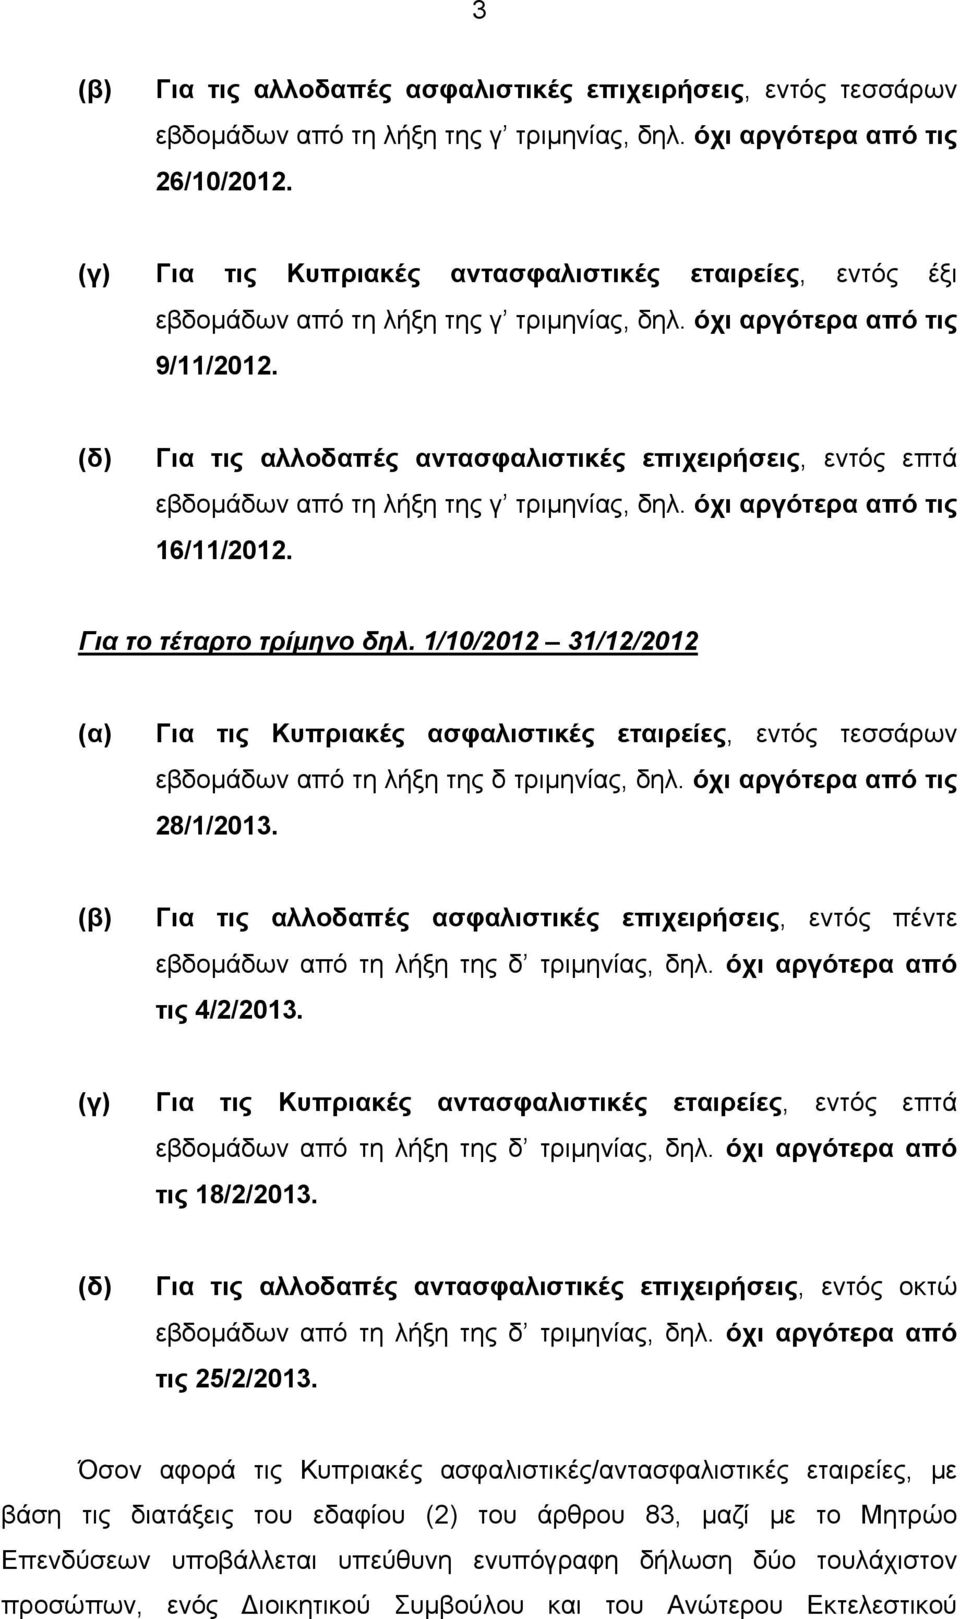 1/10/2012 31/12/2012 Για τις Κυπριακές ασφαλιστικές εταιρείες, εντός τεσσάρων εβδομάδων από τη λήξη της δ τριμηνίας, δηλ. όχι αργότερα από τις 28/1/2013.